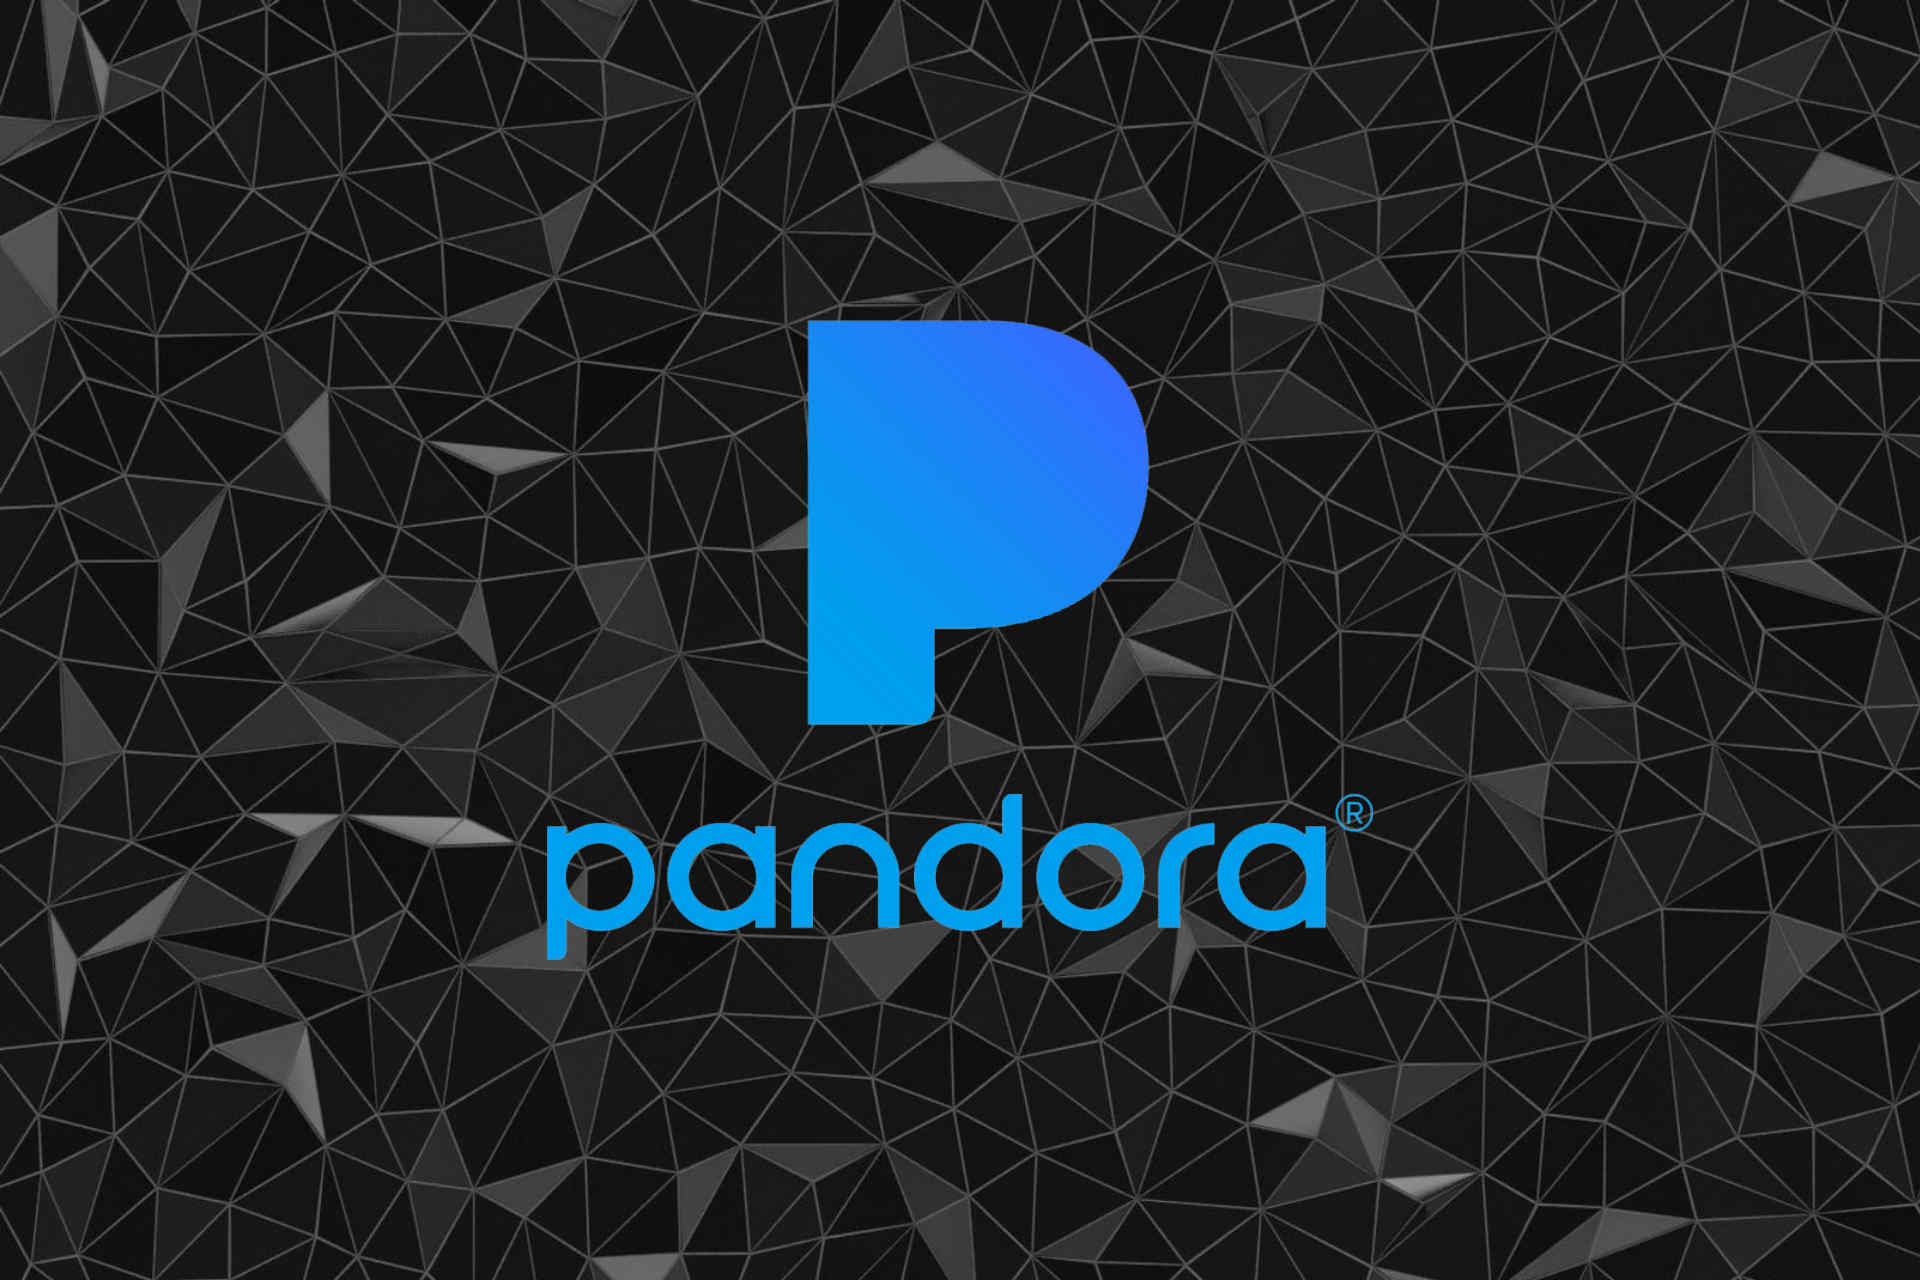 download pandora app on laptop